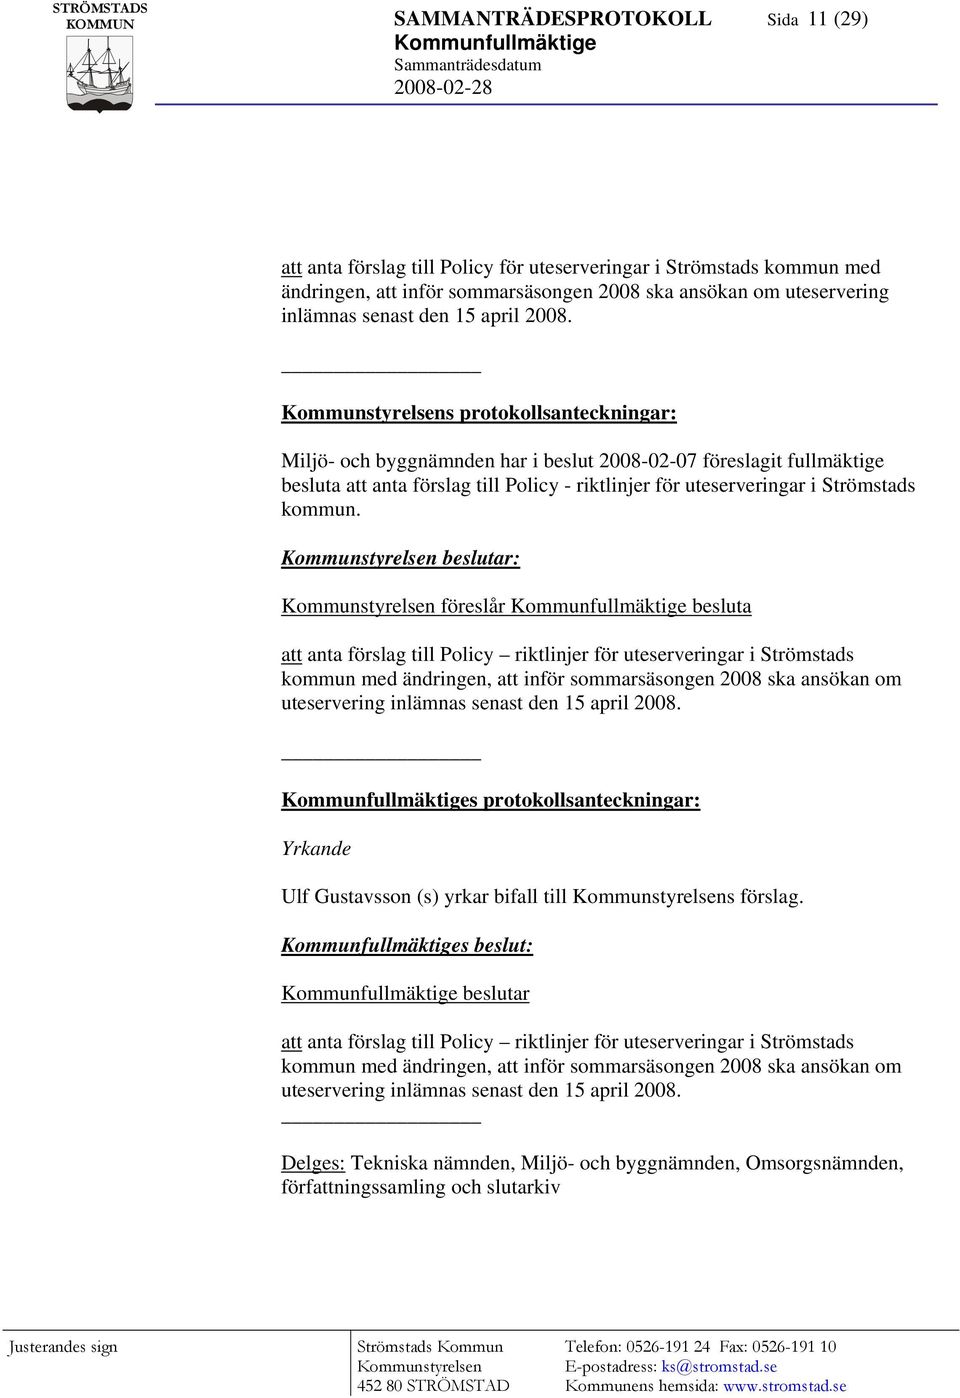 Kommunstyrelsens protokollsanteckningar: Miljö- och byggnämnden har i beslut 2008-02-07 föreslagit fullmäktige besluta att anta förslag till Policy - riktlinjer för uteserveringar i Strömstads kommun.